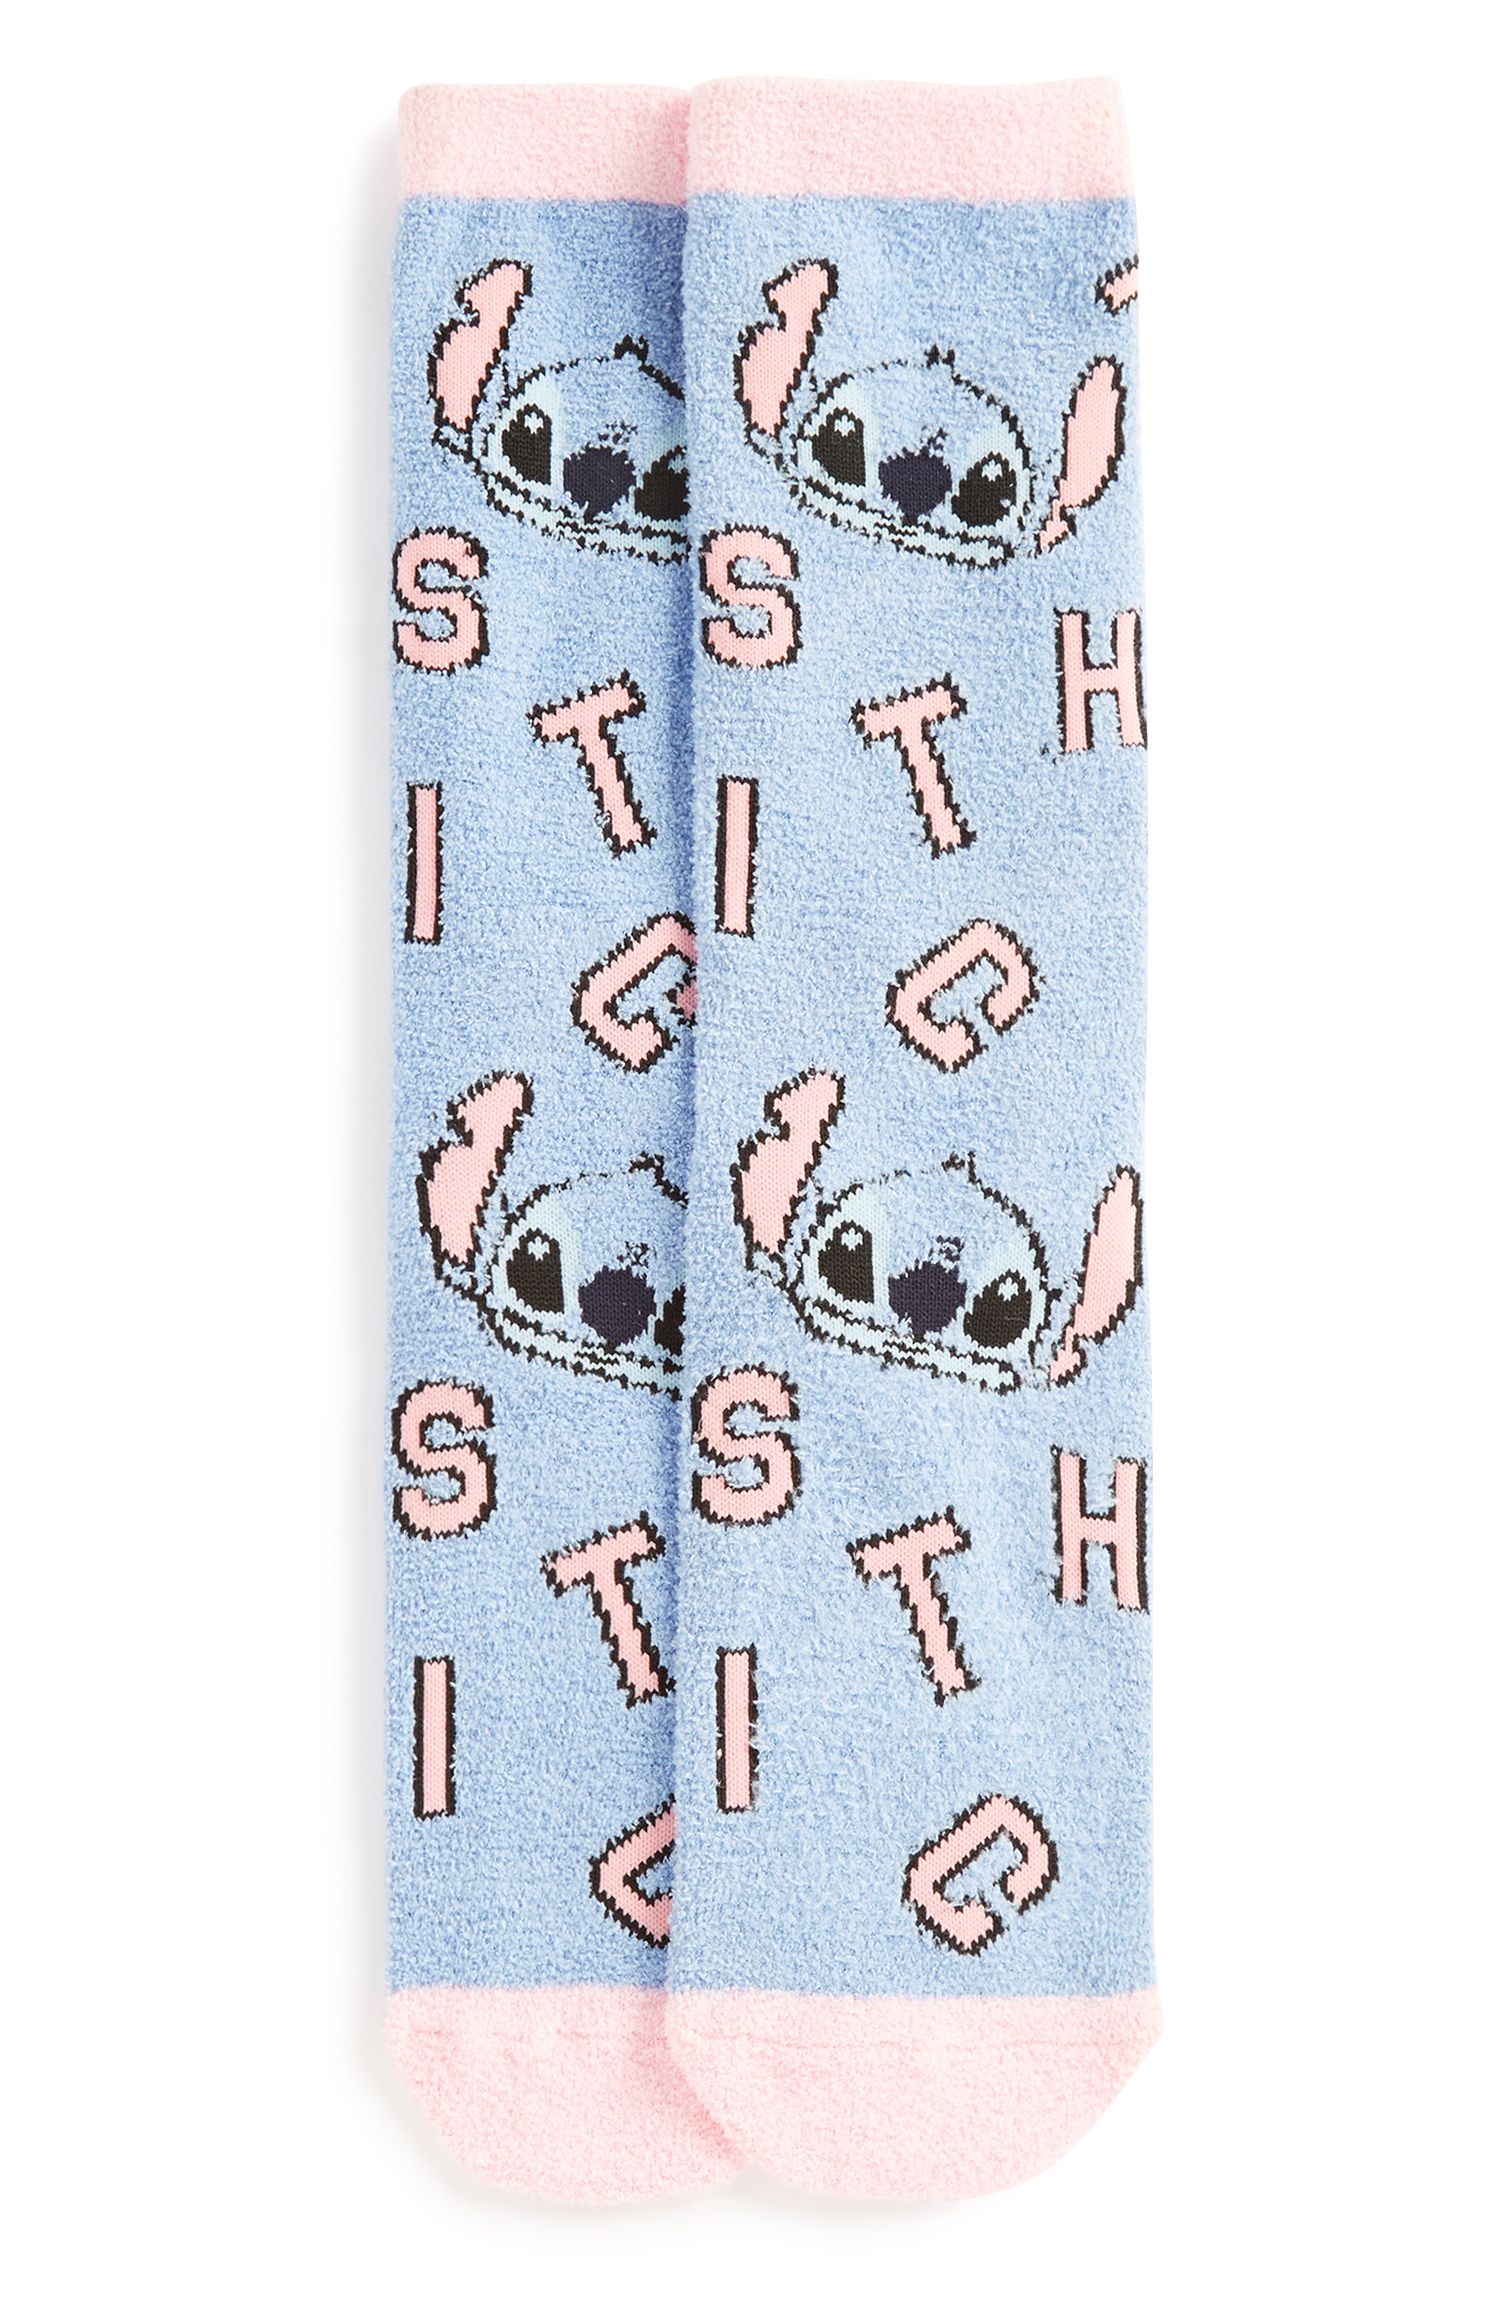 Primark ha lanzado una colección de 'Lilo y Stitch' - y Stitch pijama